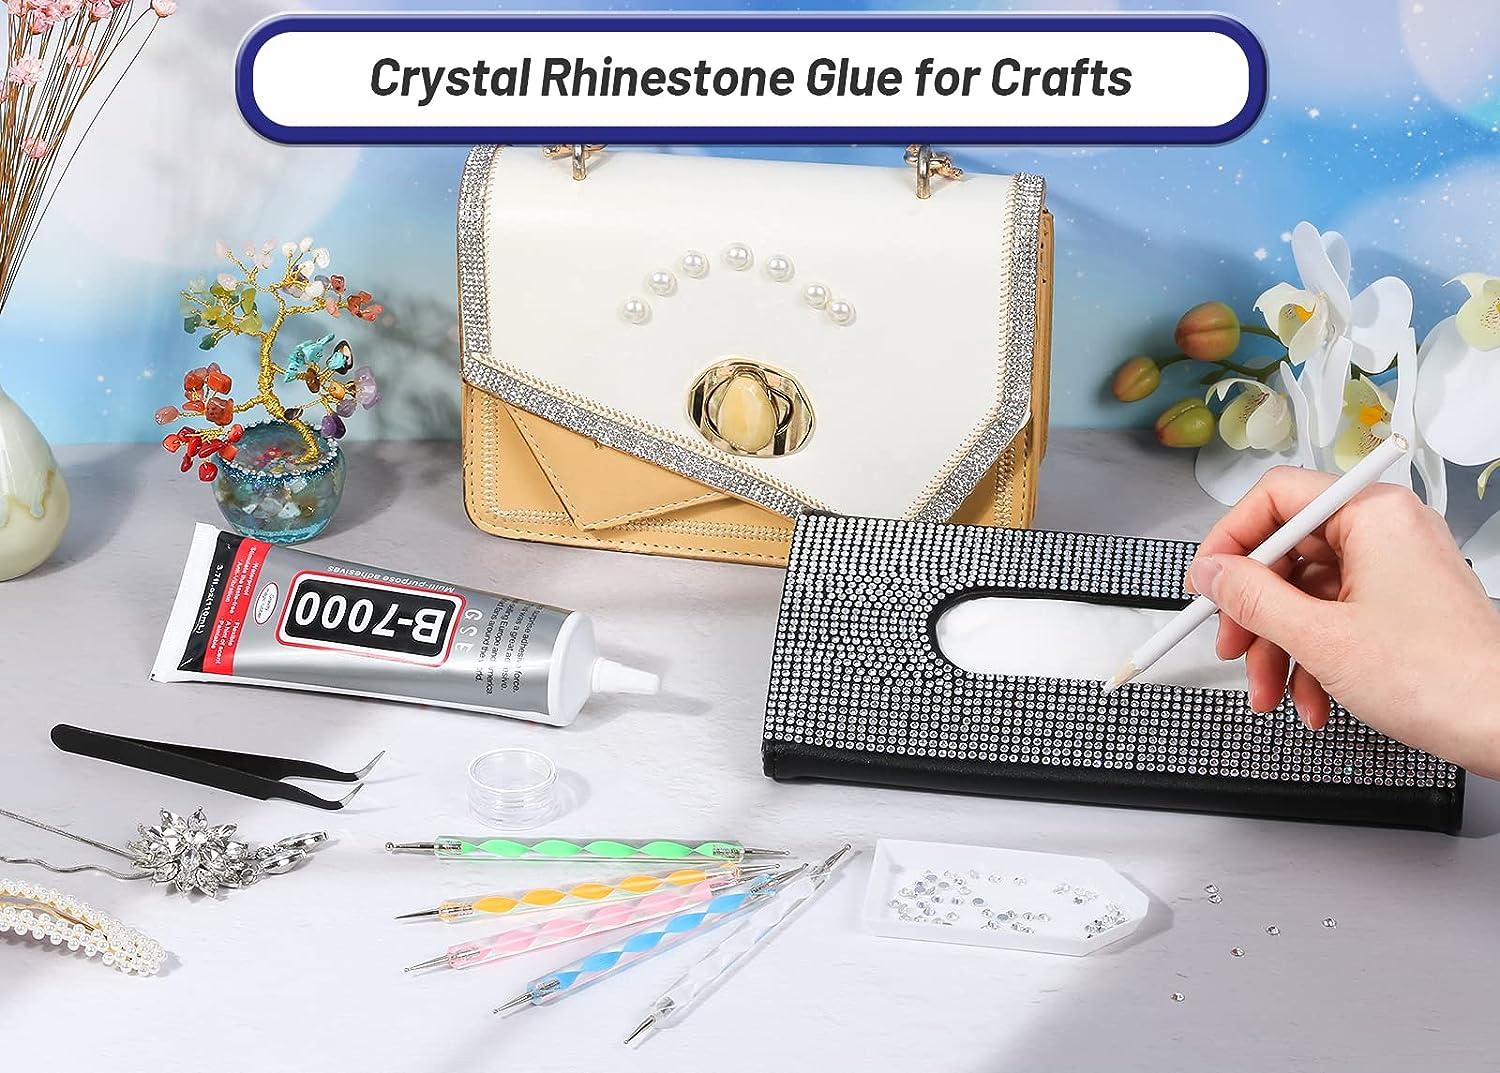 110ml B-7000 Glue Clear for Rhinestone Crafts Glue Jewelry Bead Adhesive  Glues